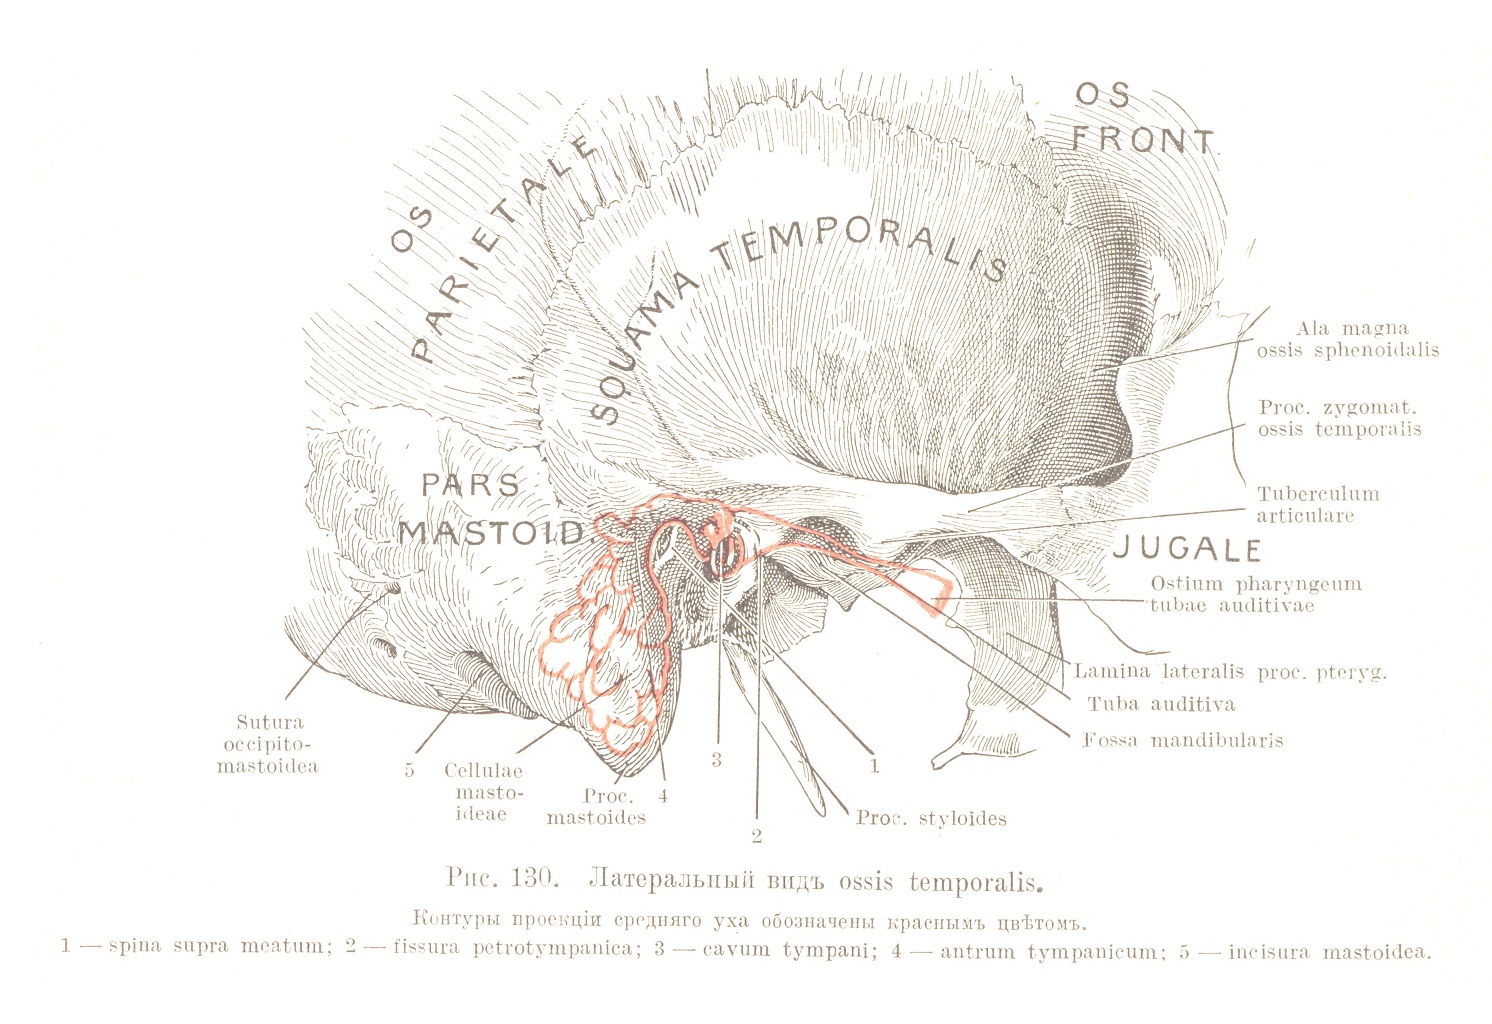 Латеральный видъ ossis temporalis